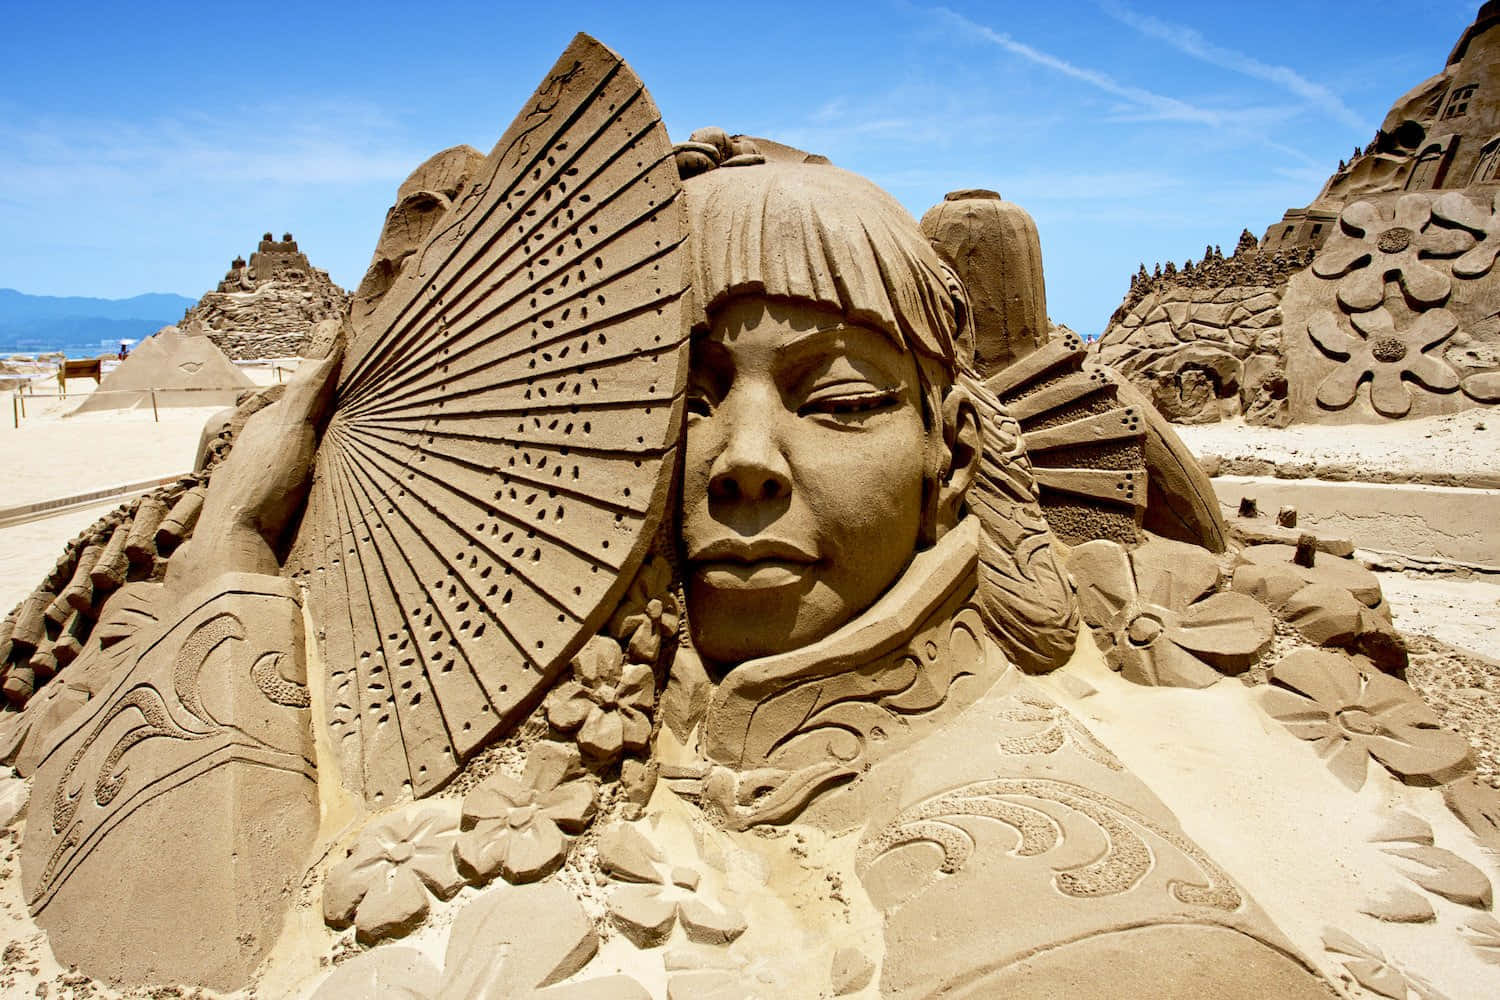 Enkvinna Är Sandsculptad På En Strand.